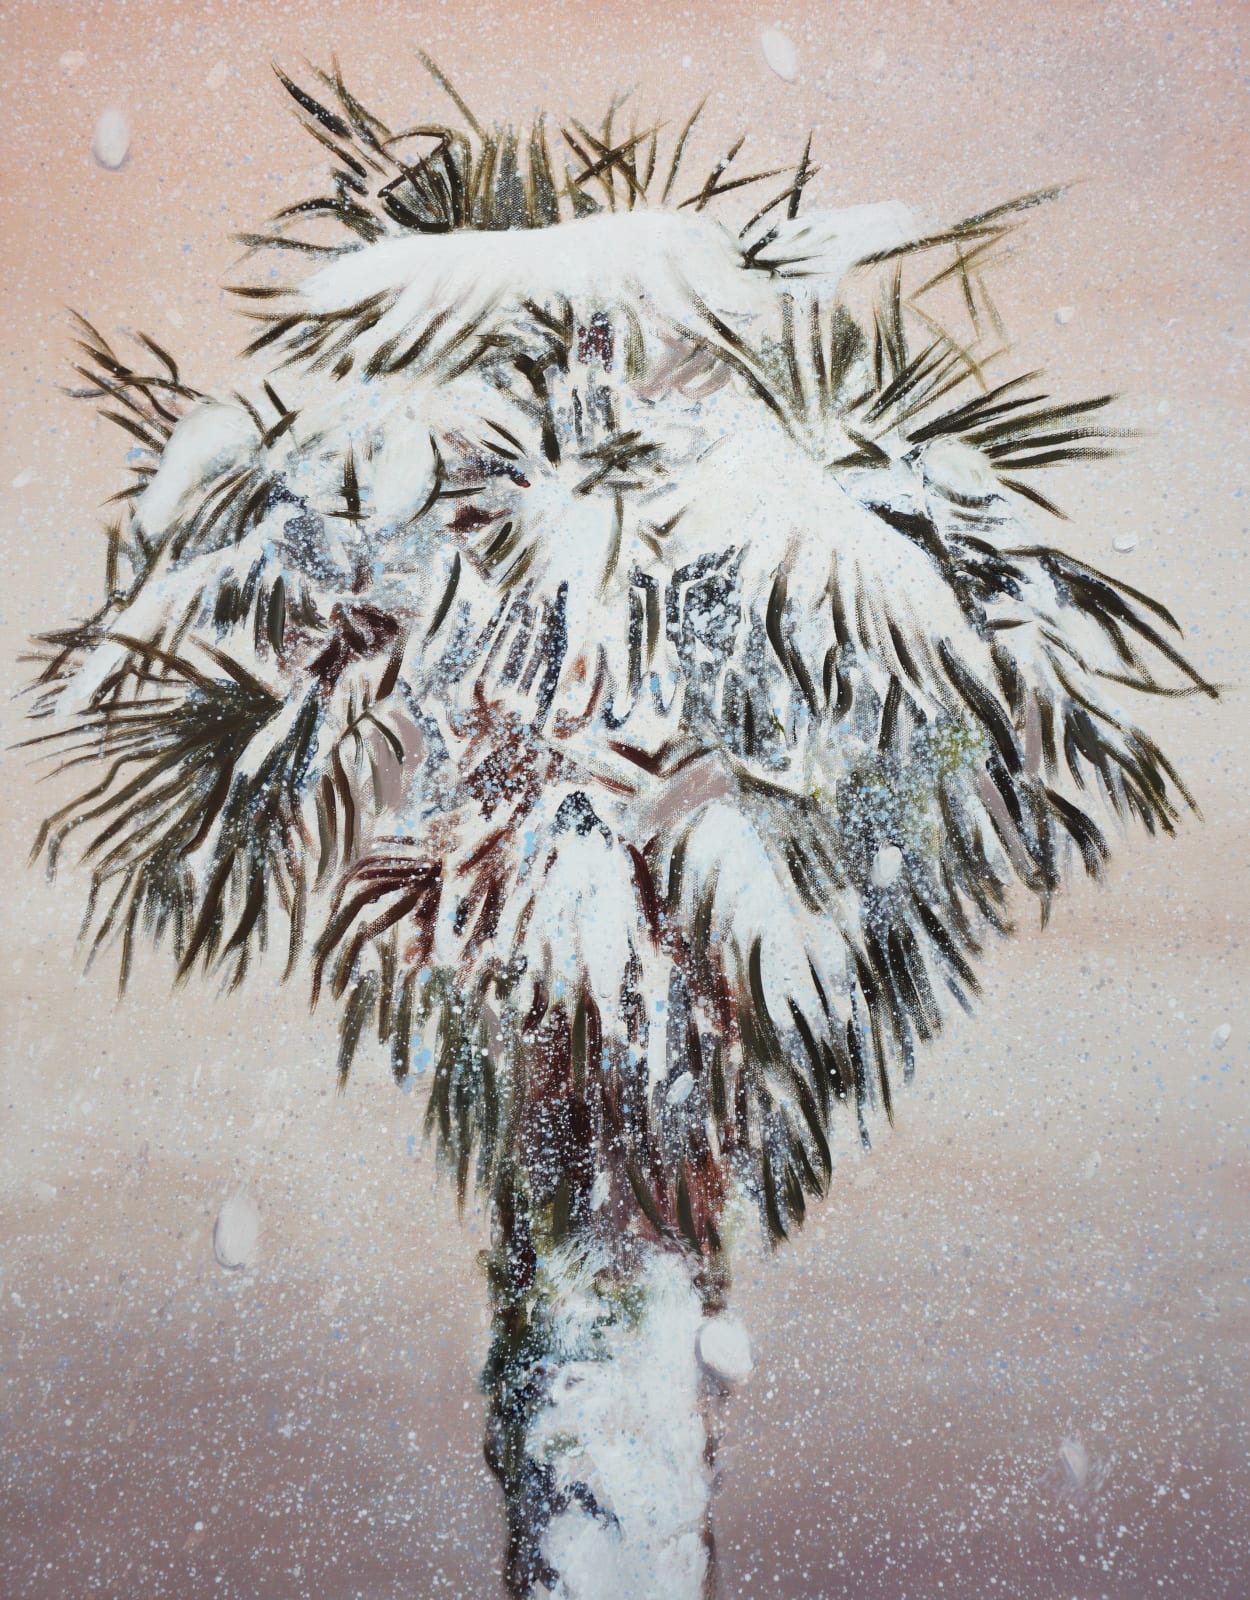 Aglaé Bassens, Snow Palms, 2021